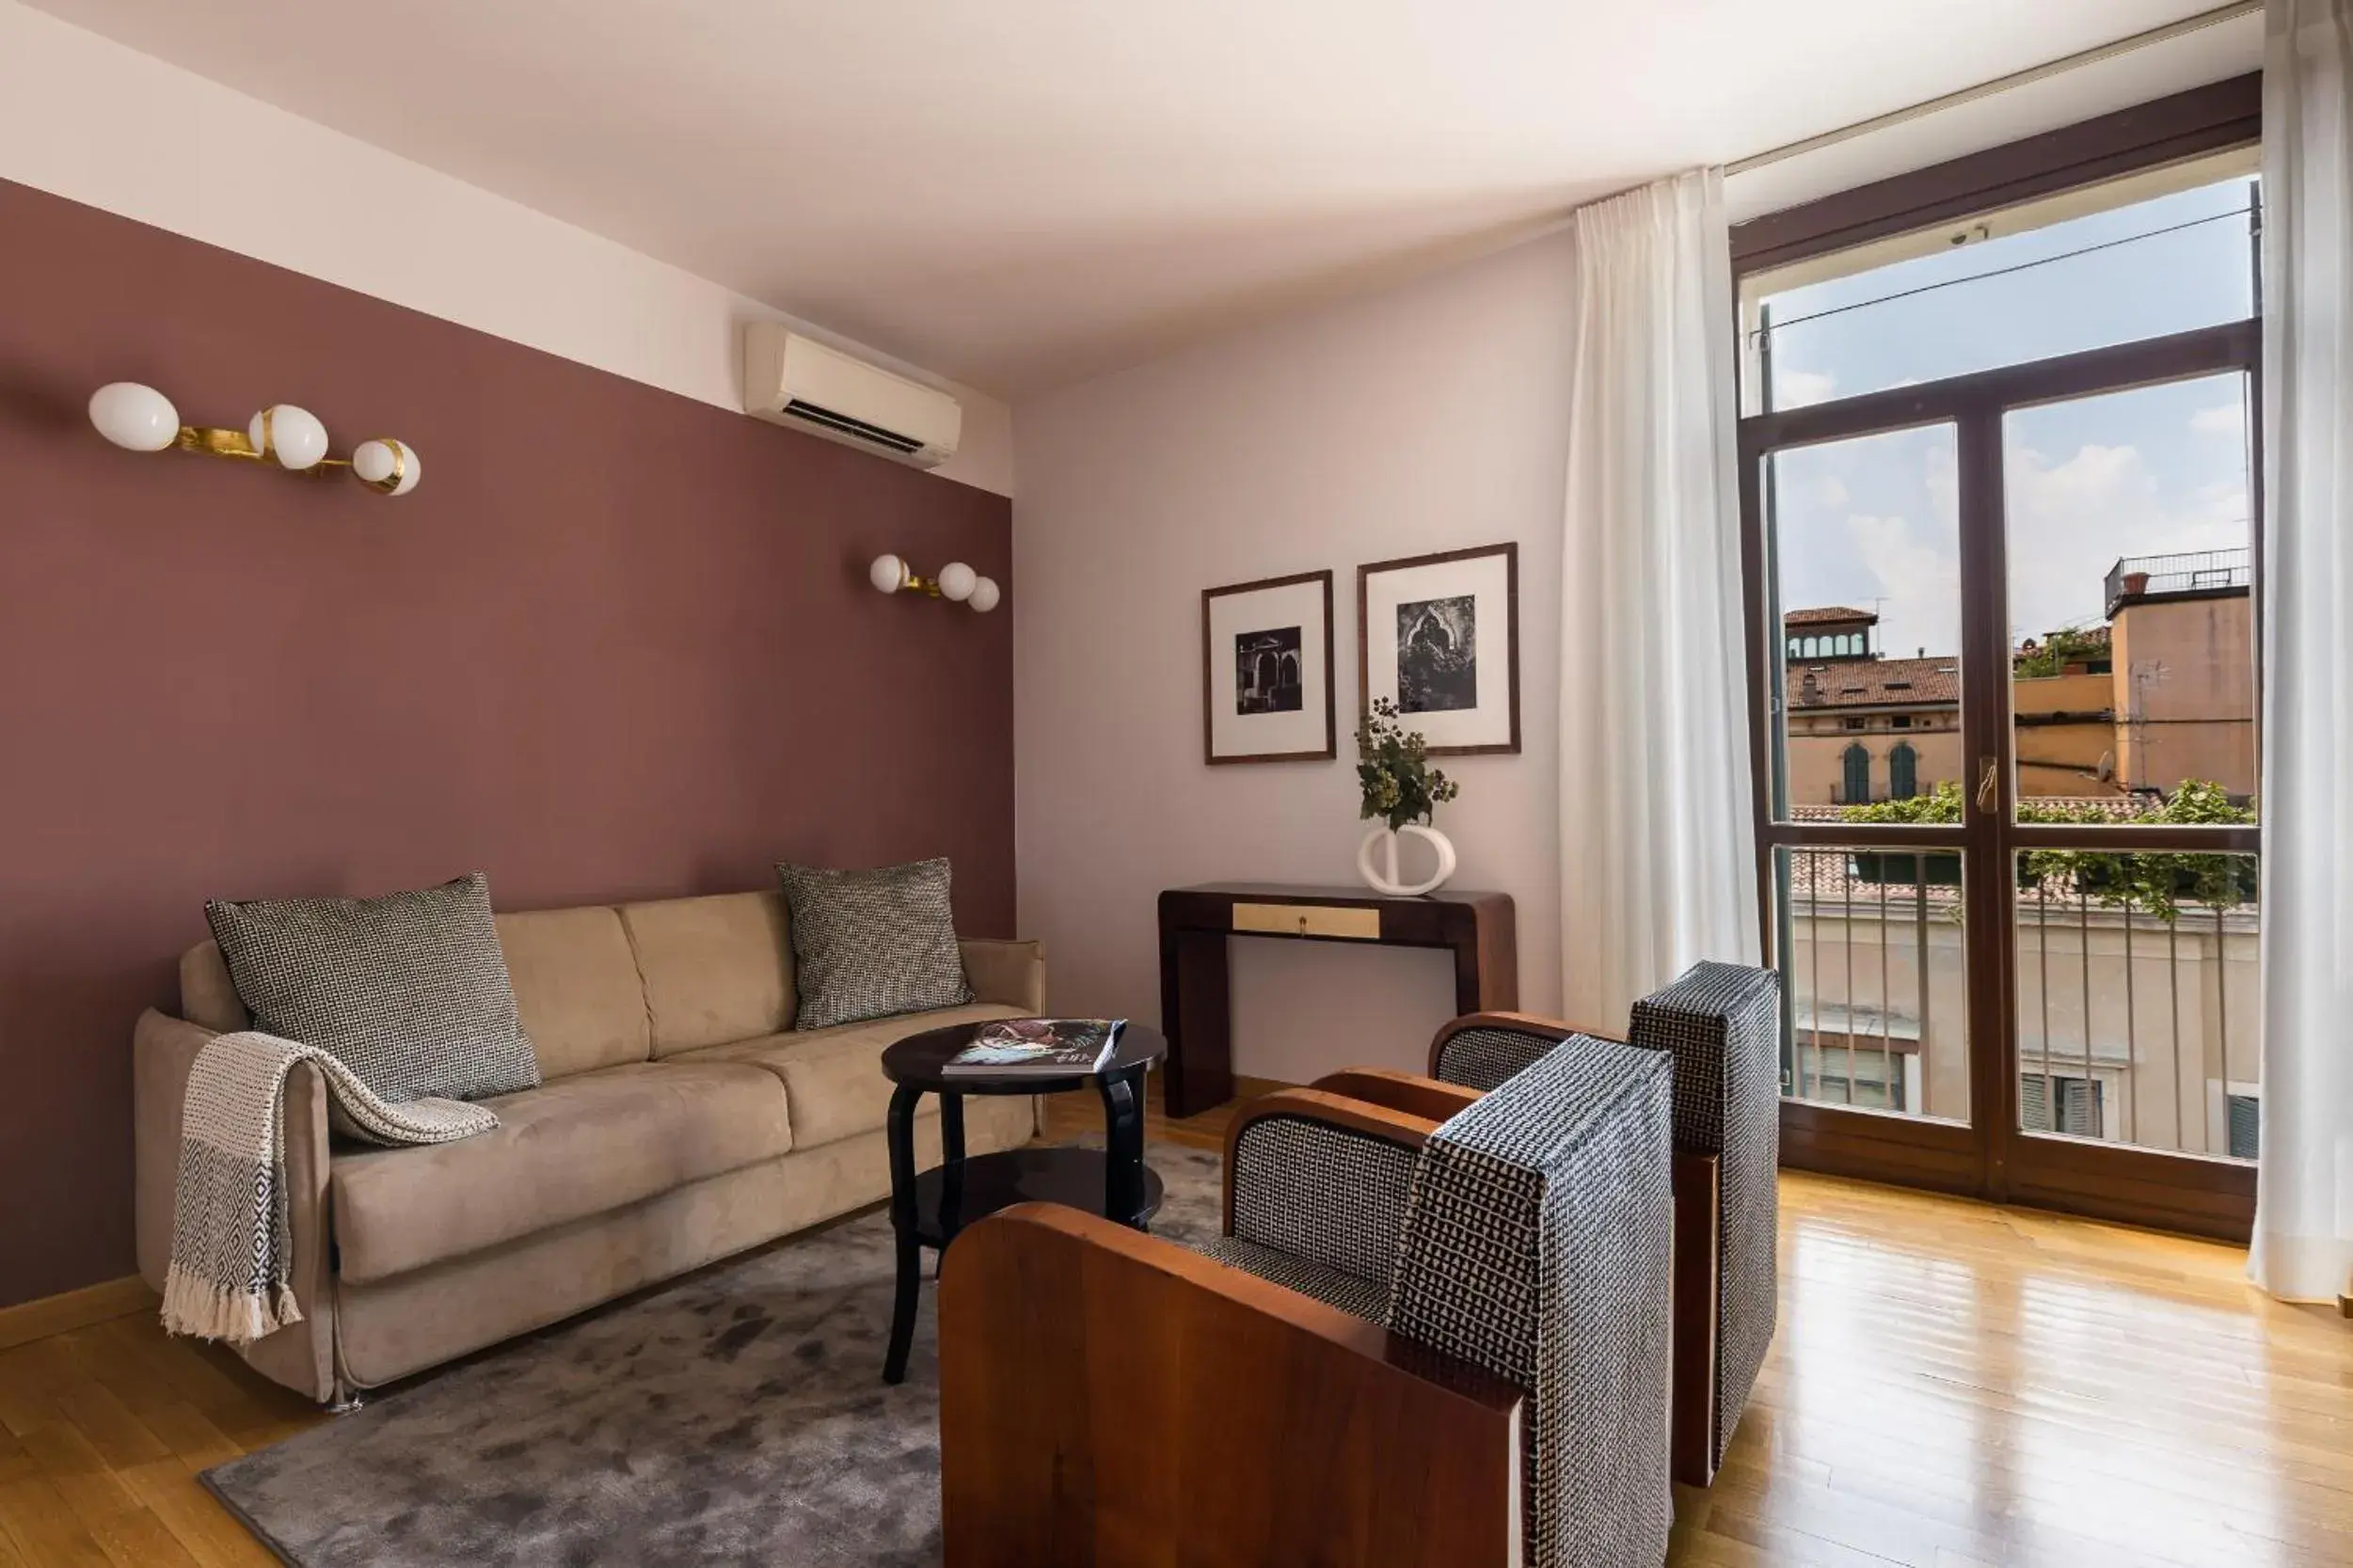 TV and multimedia, Seating Area in Escalus Luxury Suites Verona